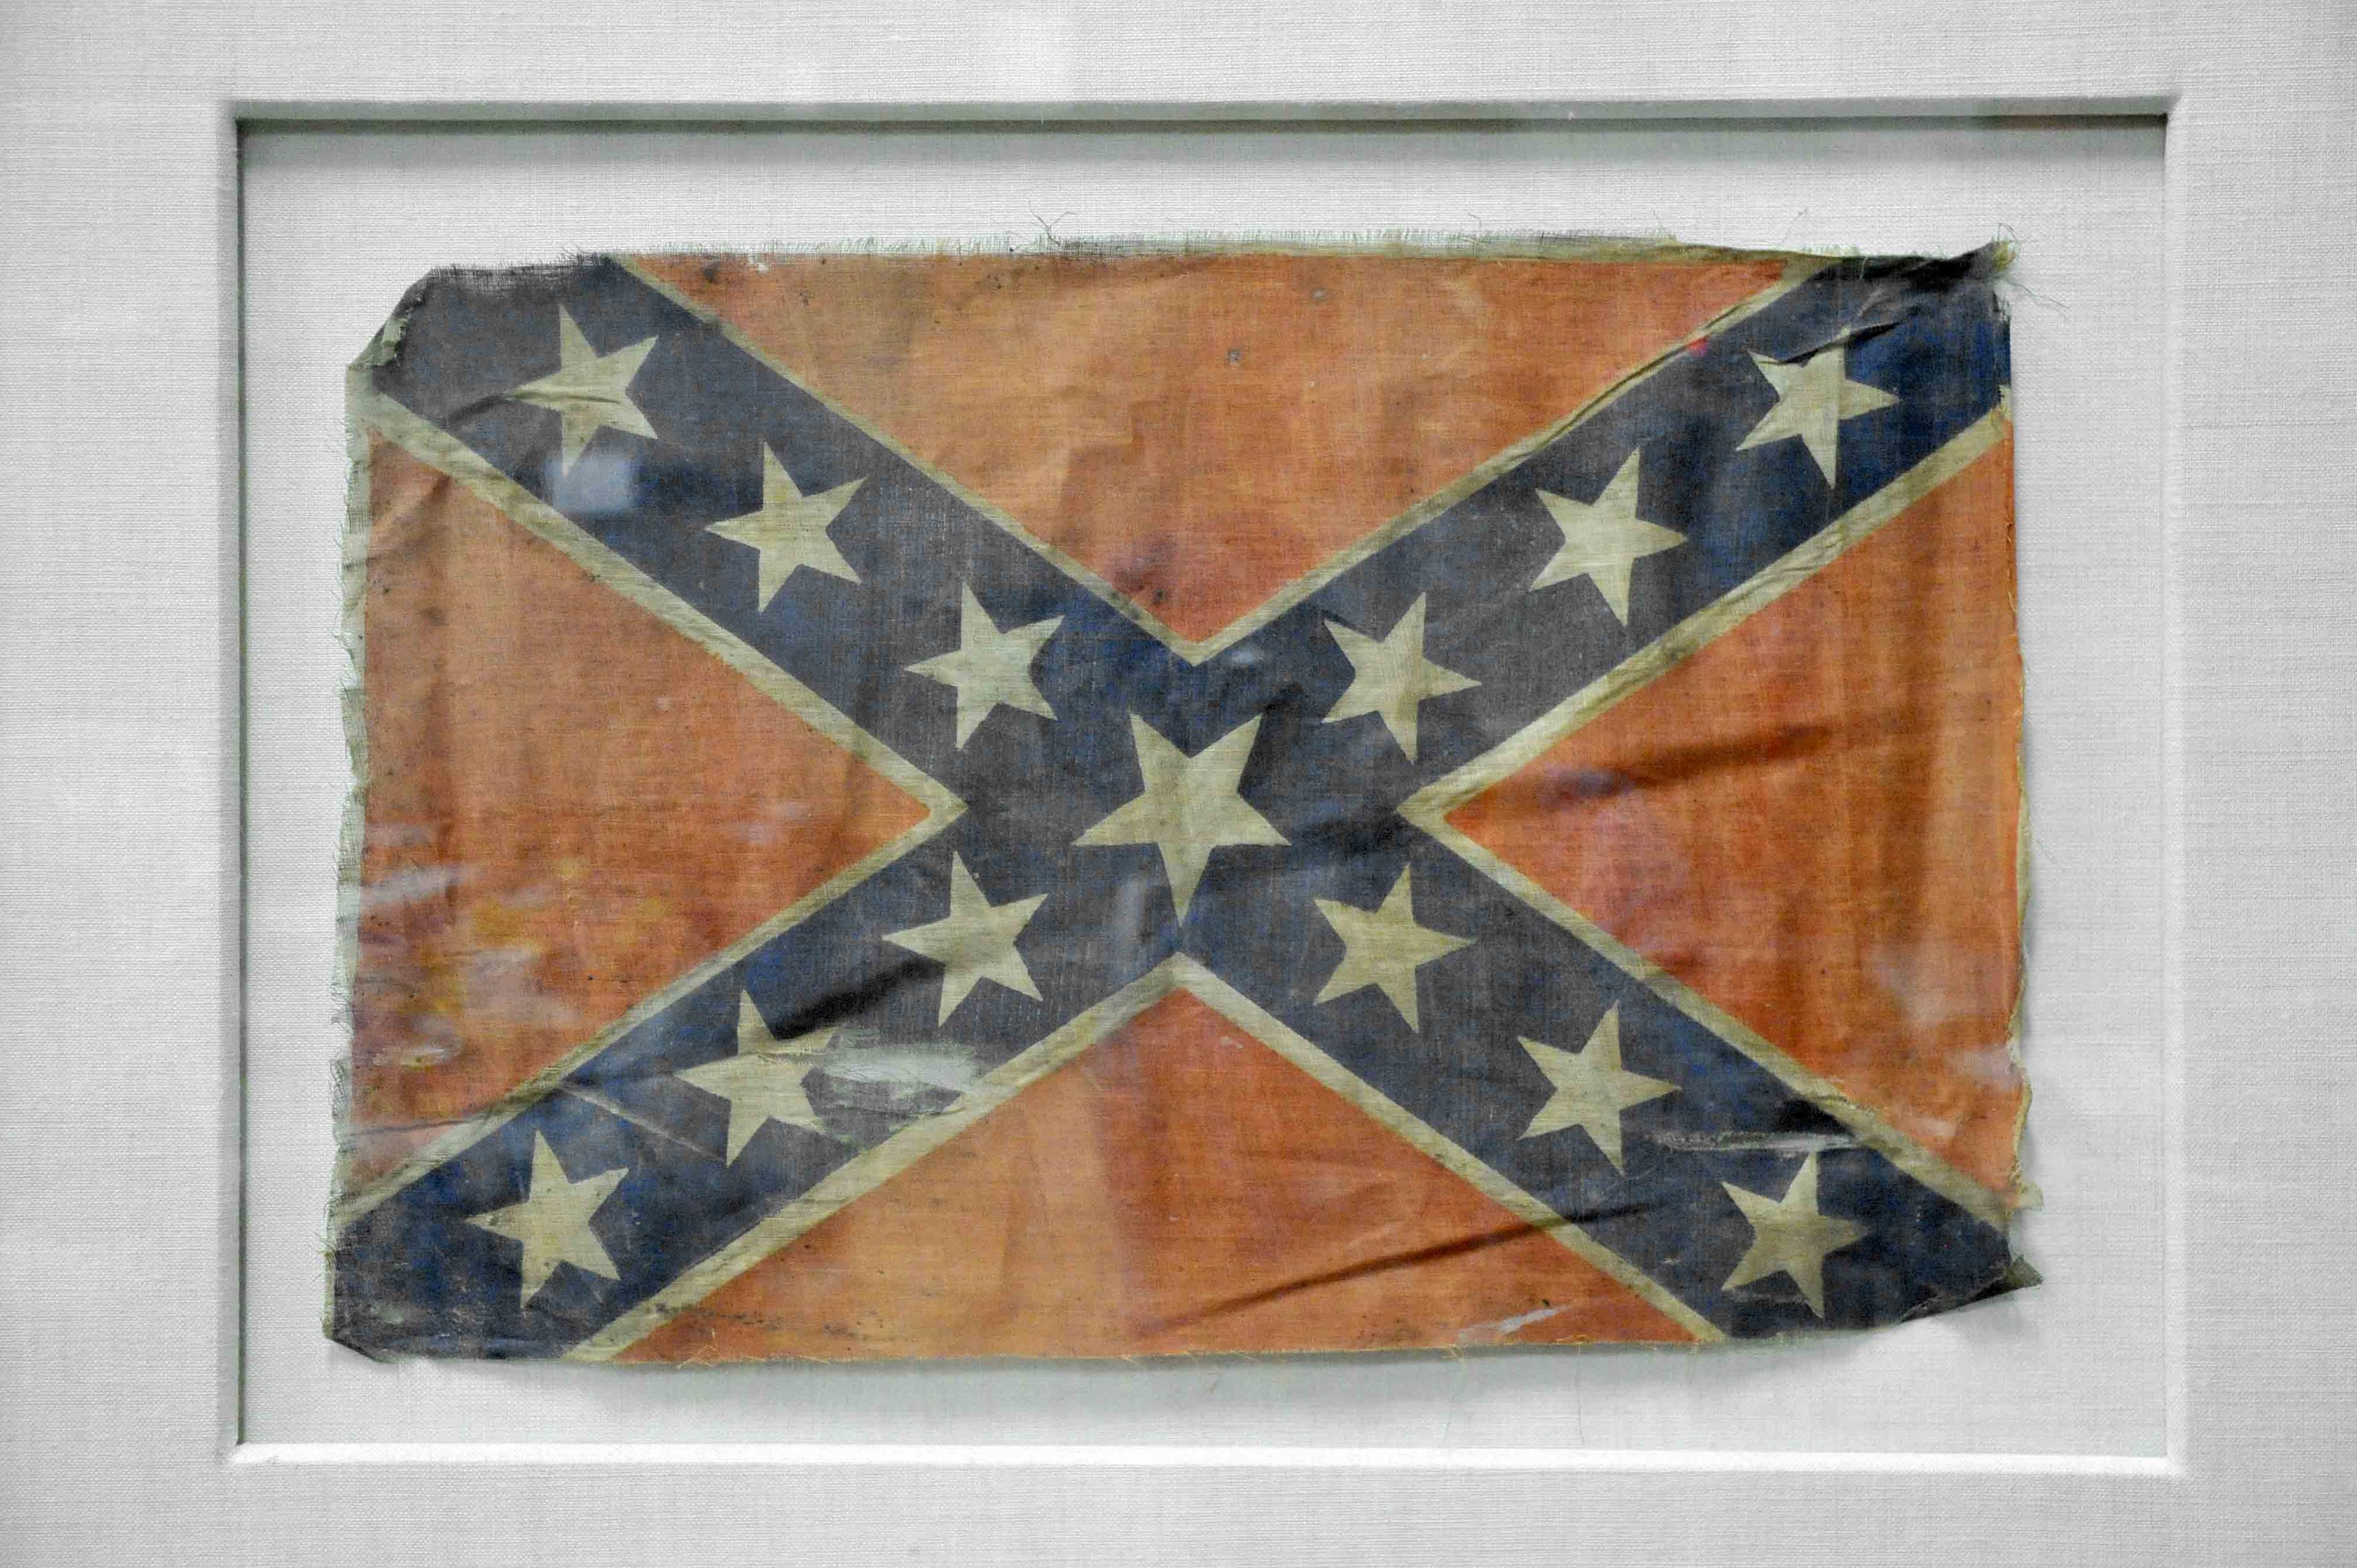 Framed Confederate Battle Ensign Flag (HKR)